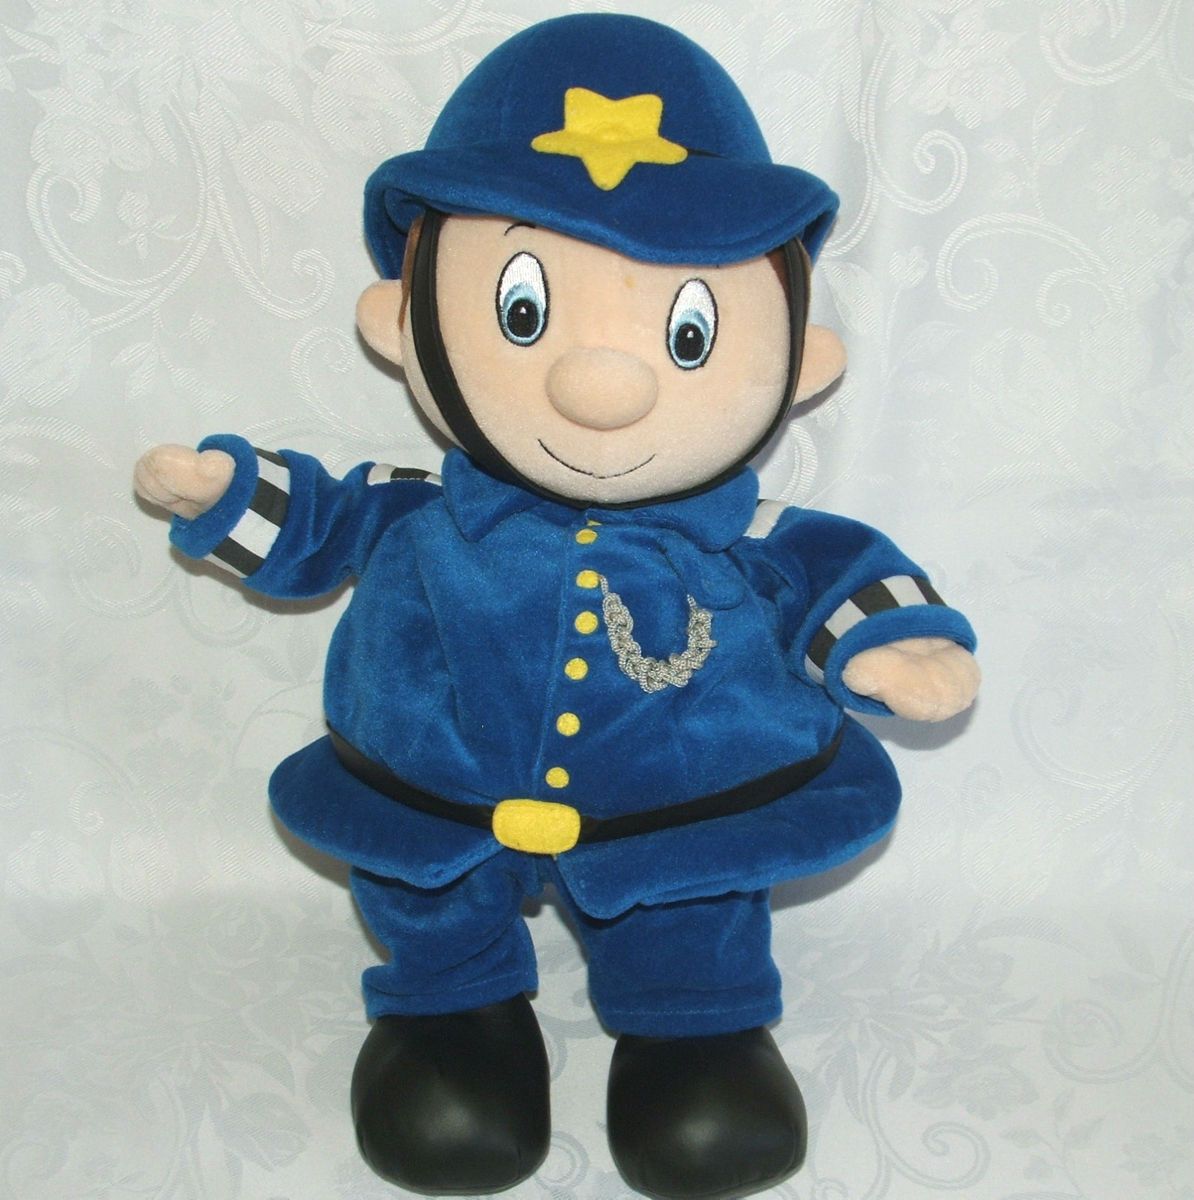  Friend Noddy 16 Mr Plod Policeman Plush Soft Doll Enid Blyton